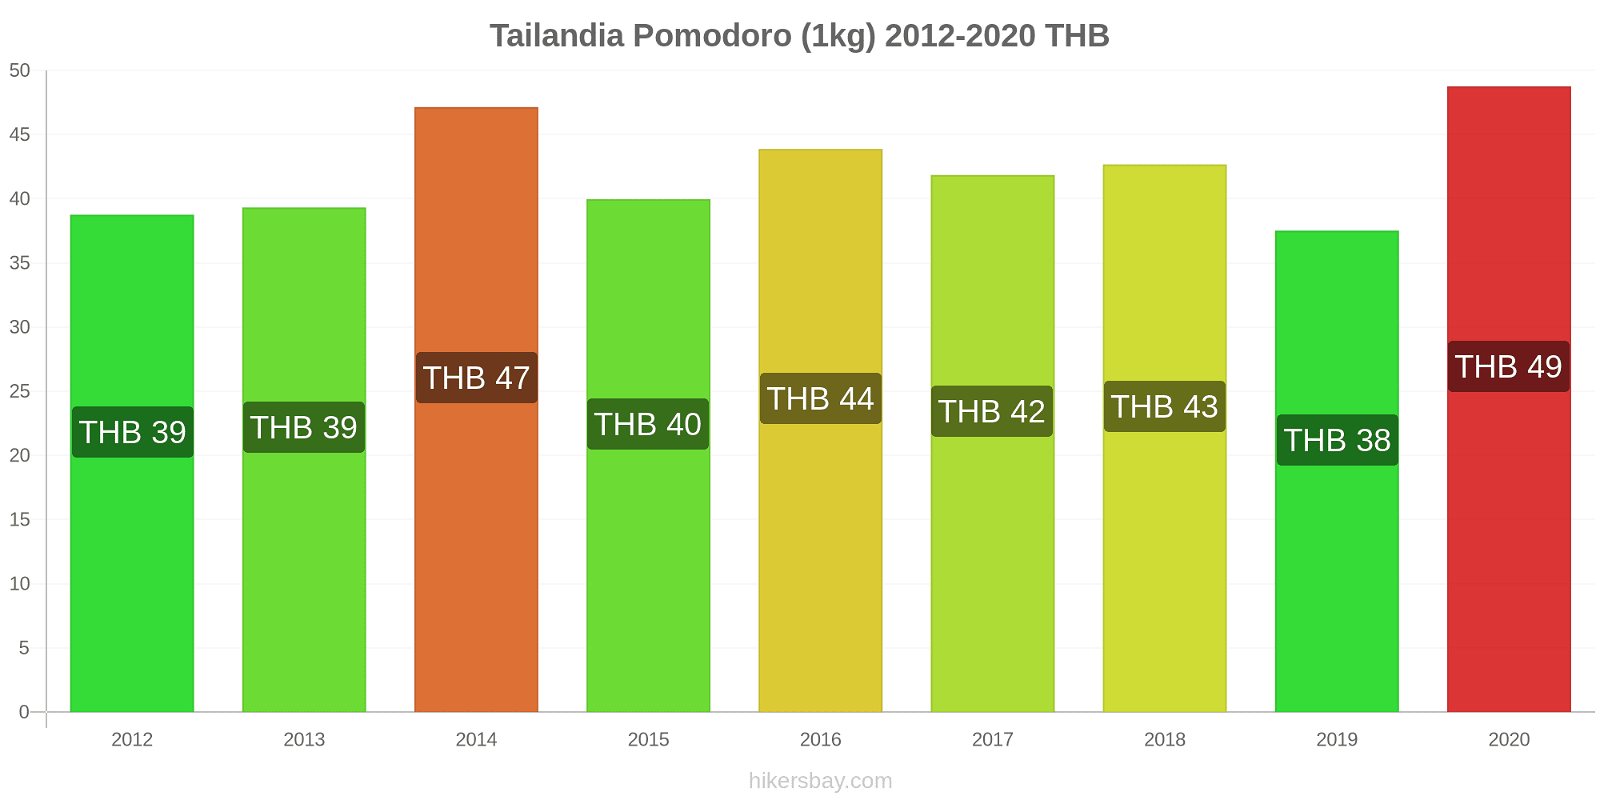 Tailandia variazioni di prezzo Pomodoro (1kg) hikersbay.com